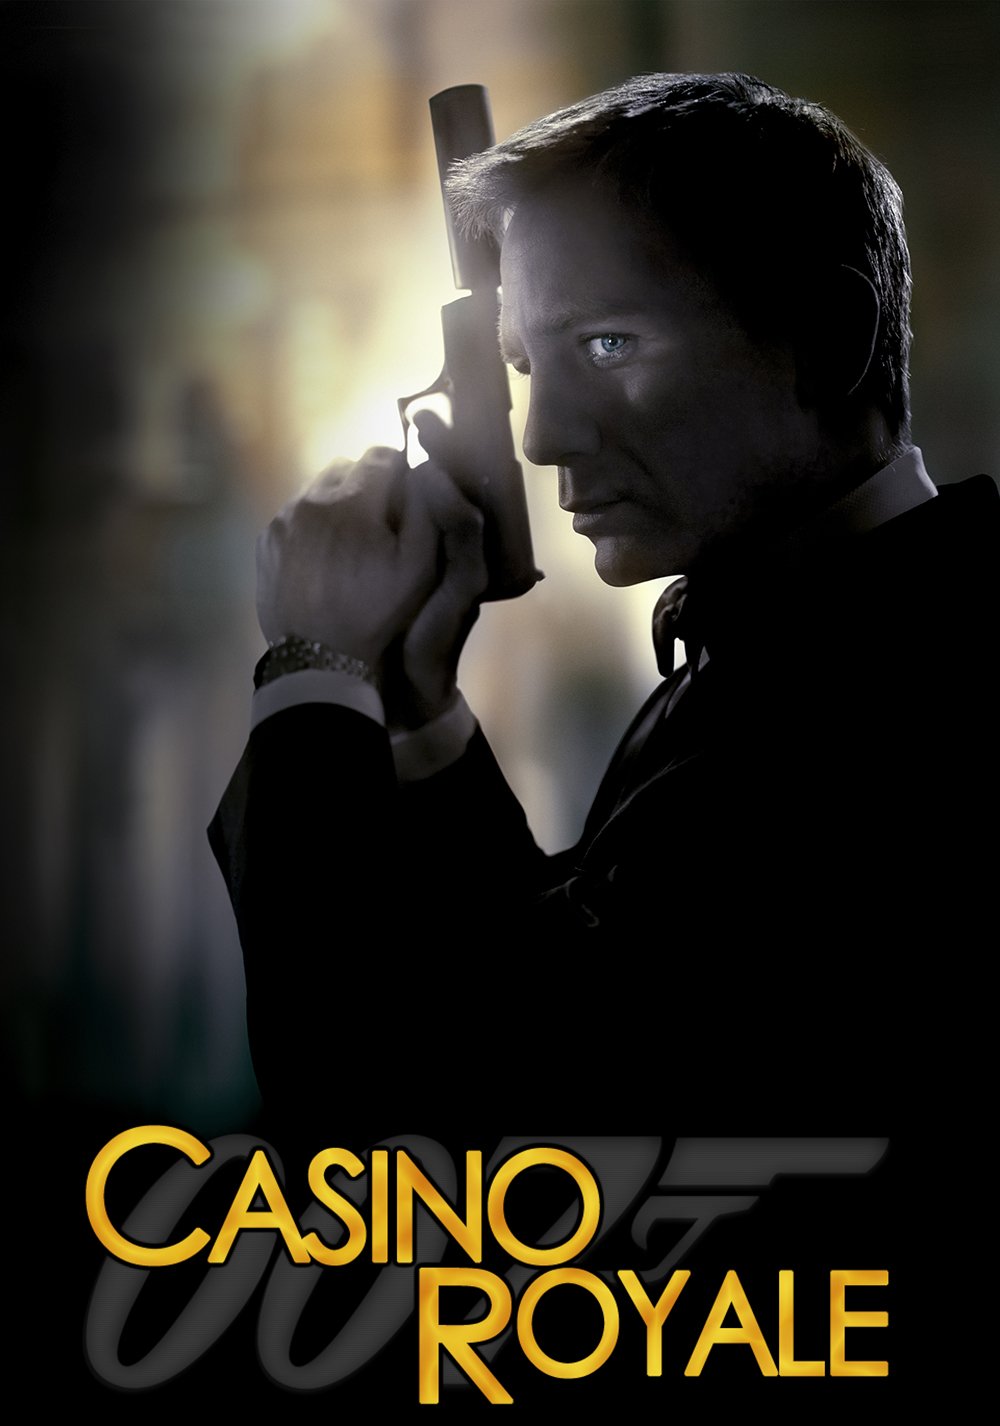 агент оо7 казино рояль смотреть онлайн